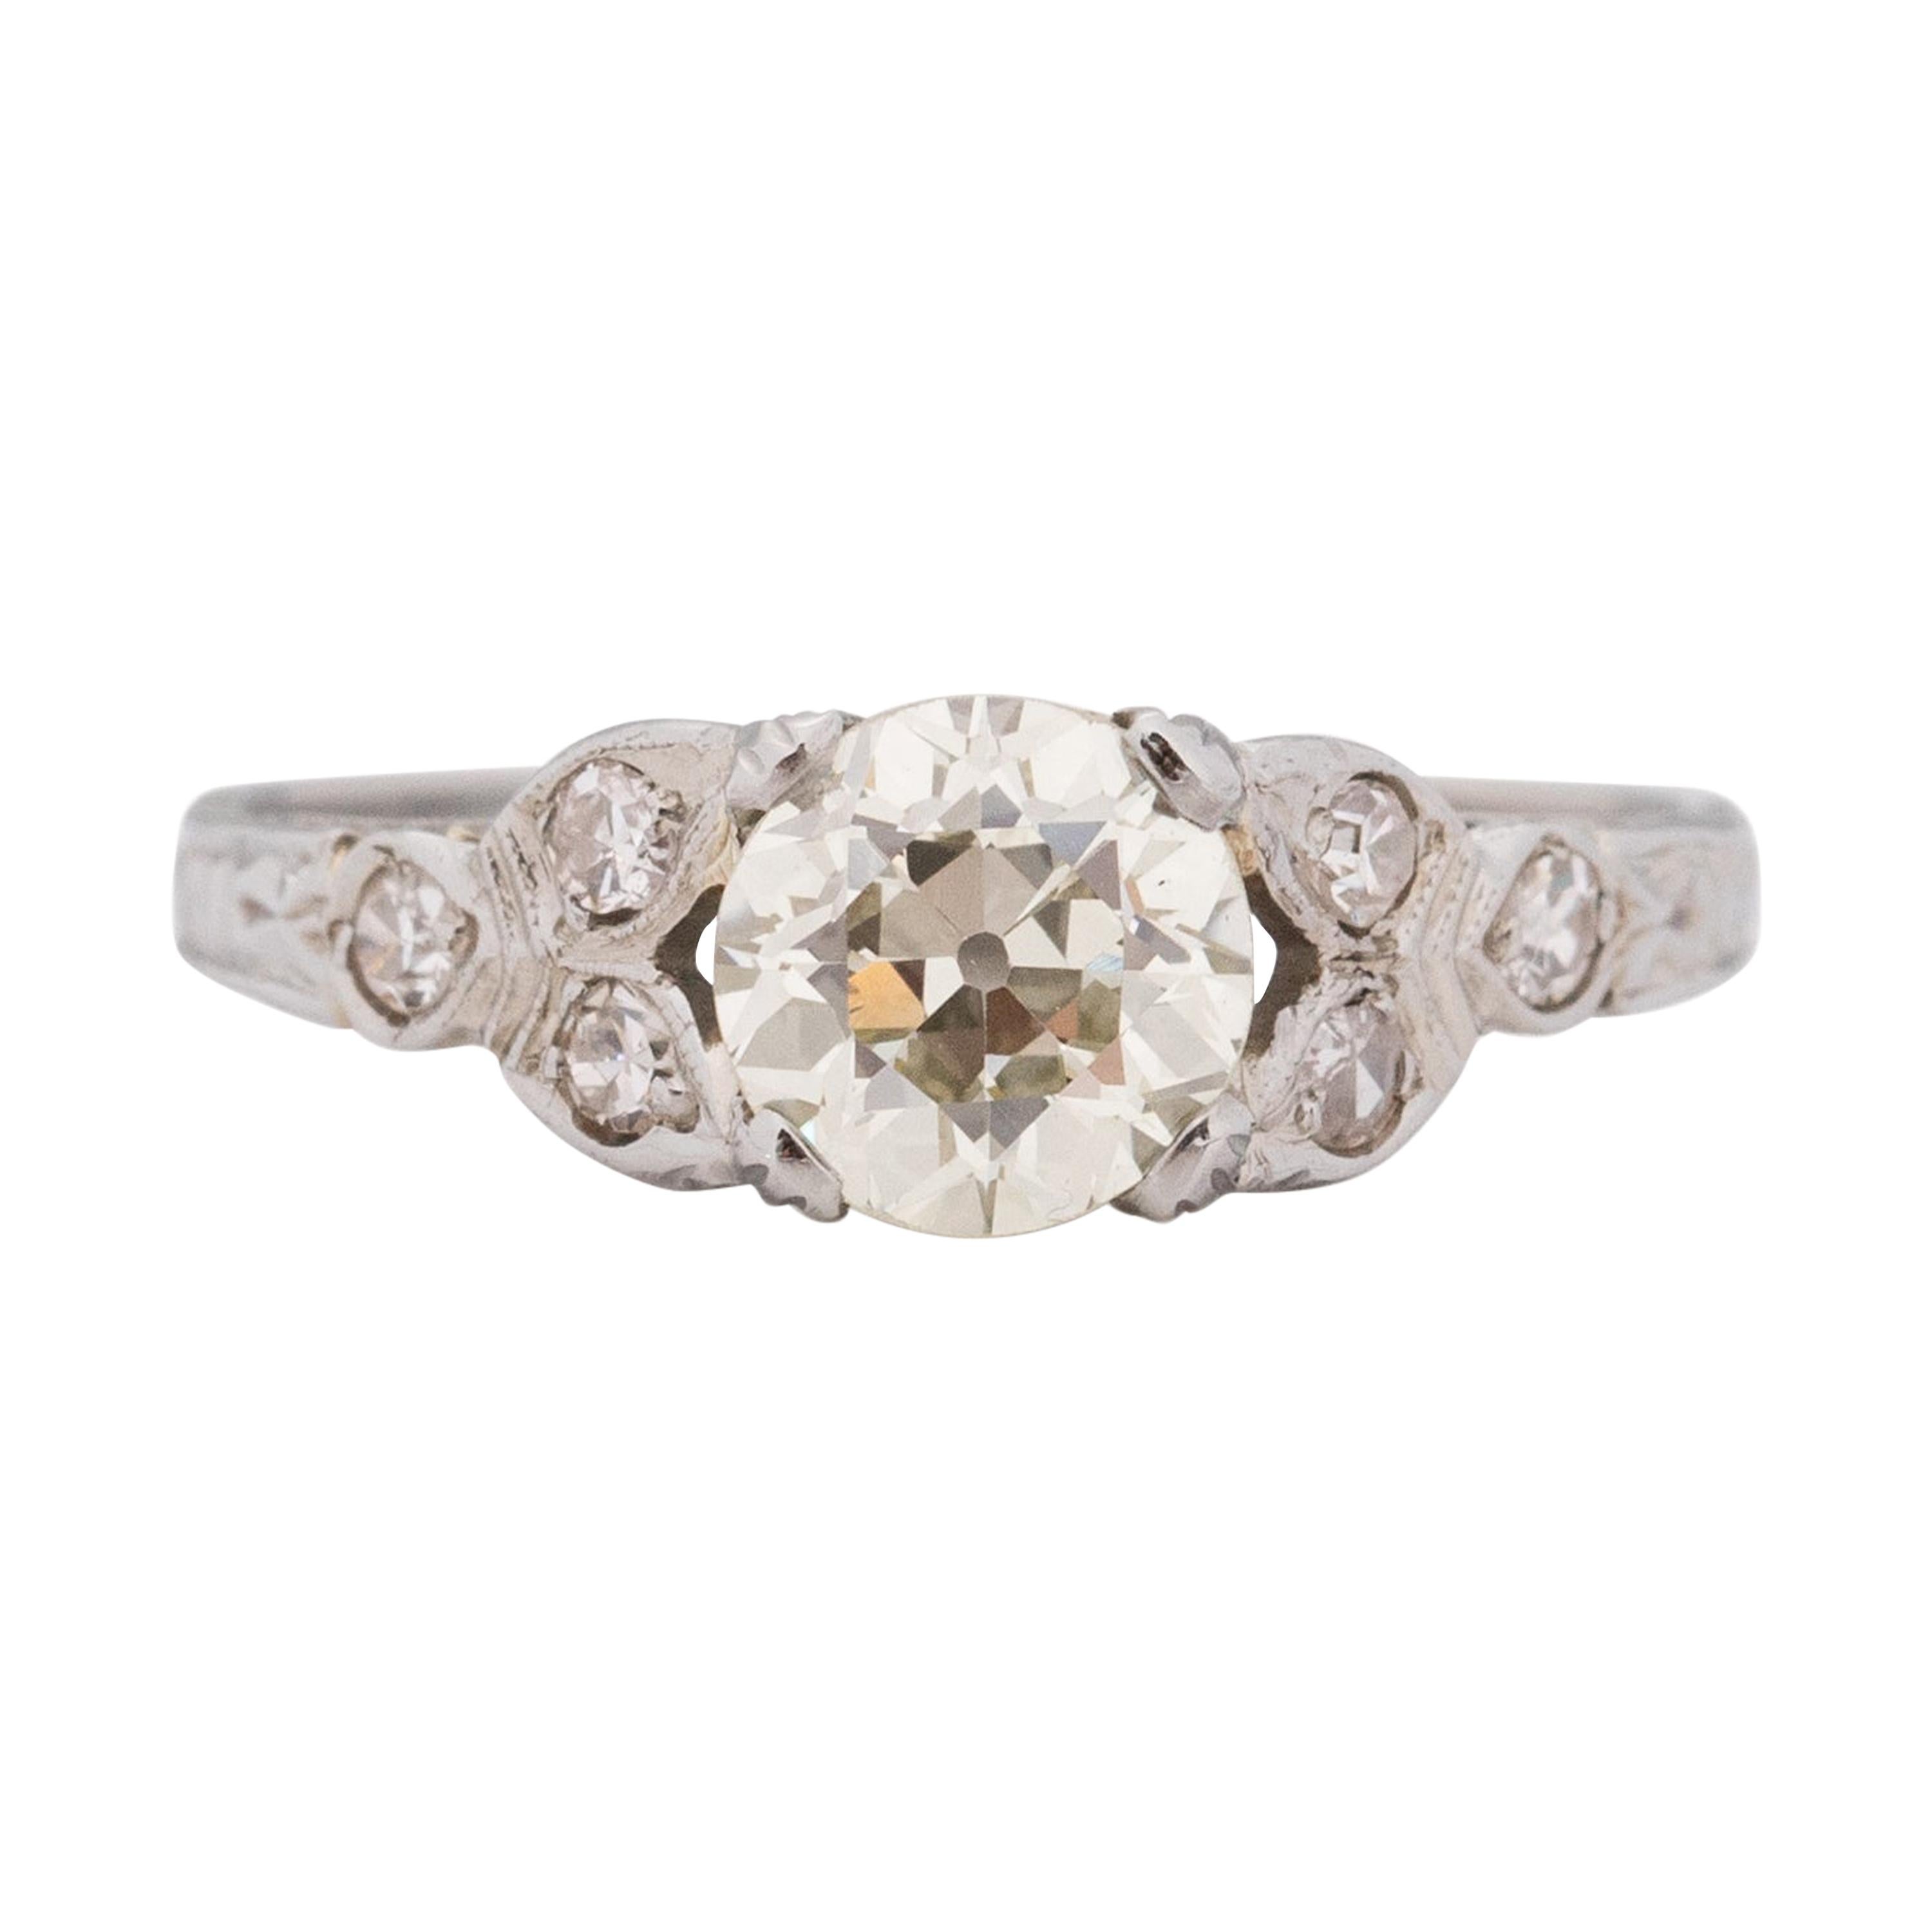 1.12 Carat Art Deco Diamond 18 Karat White Gold Engagement Ring